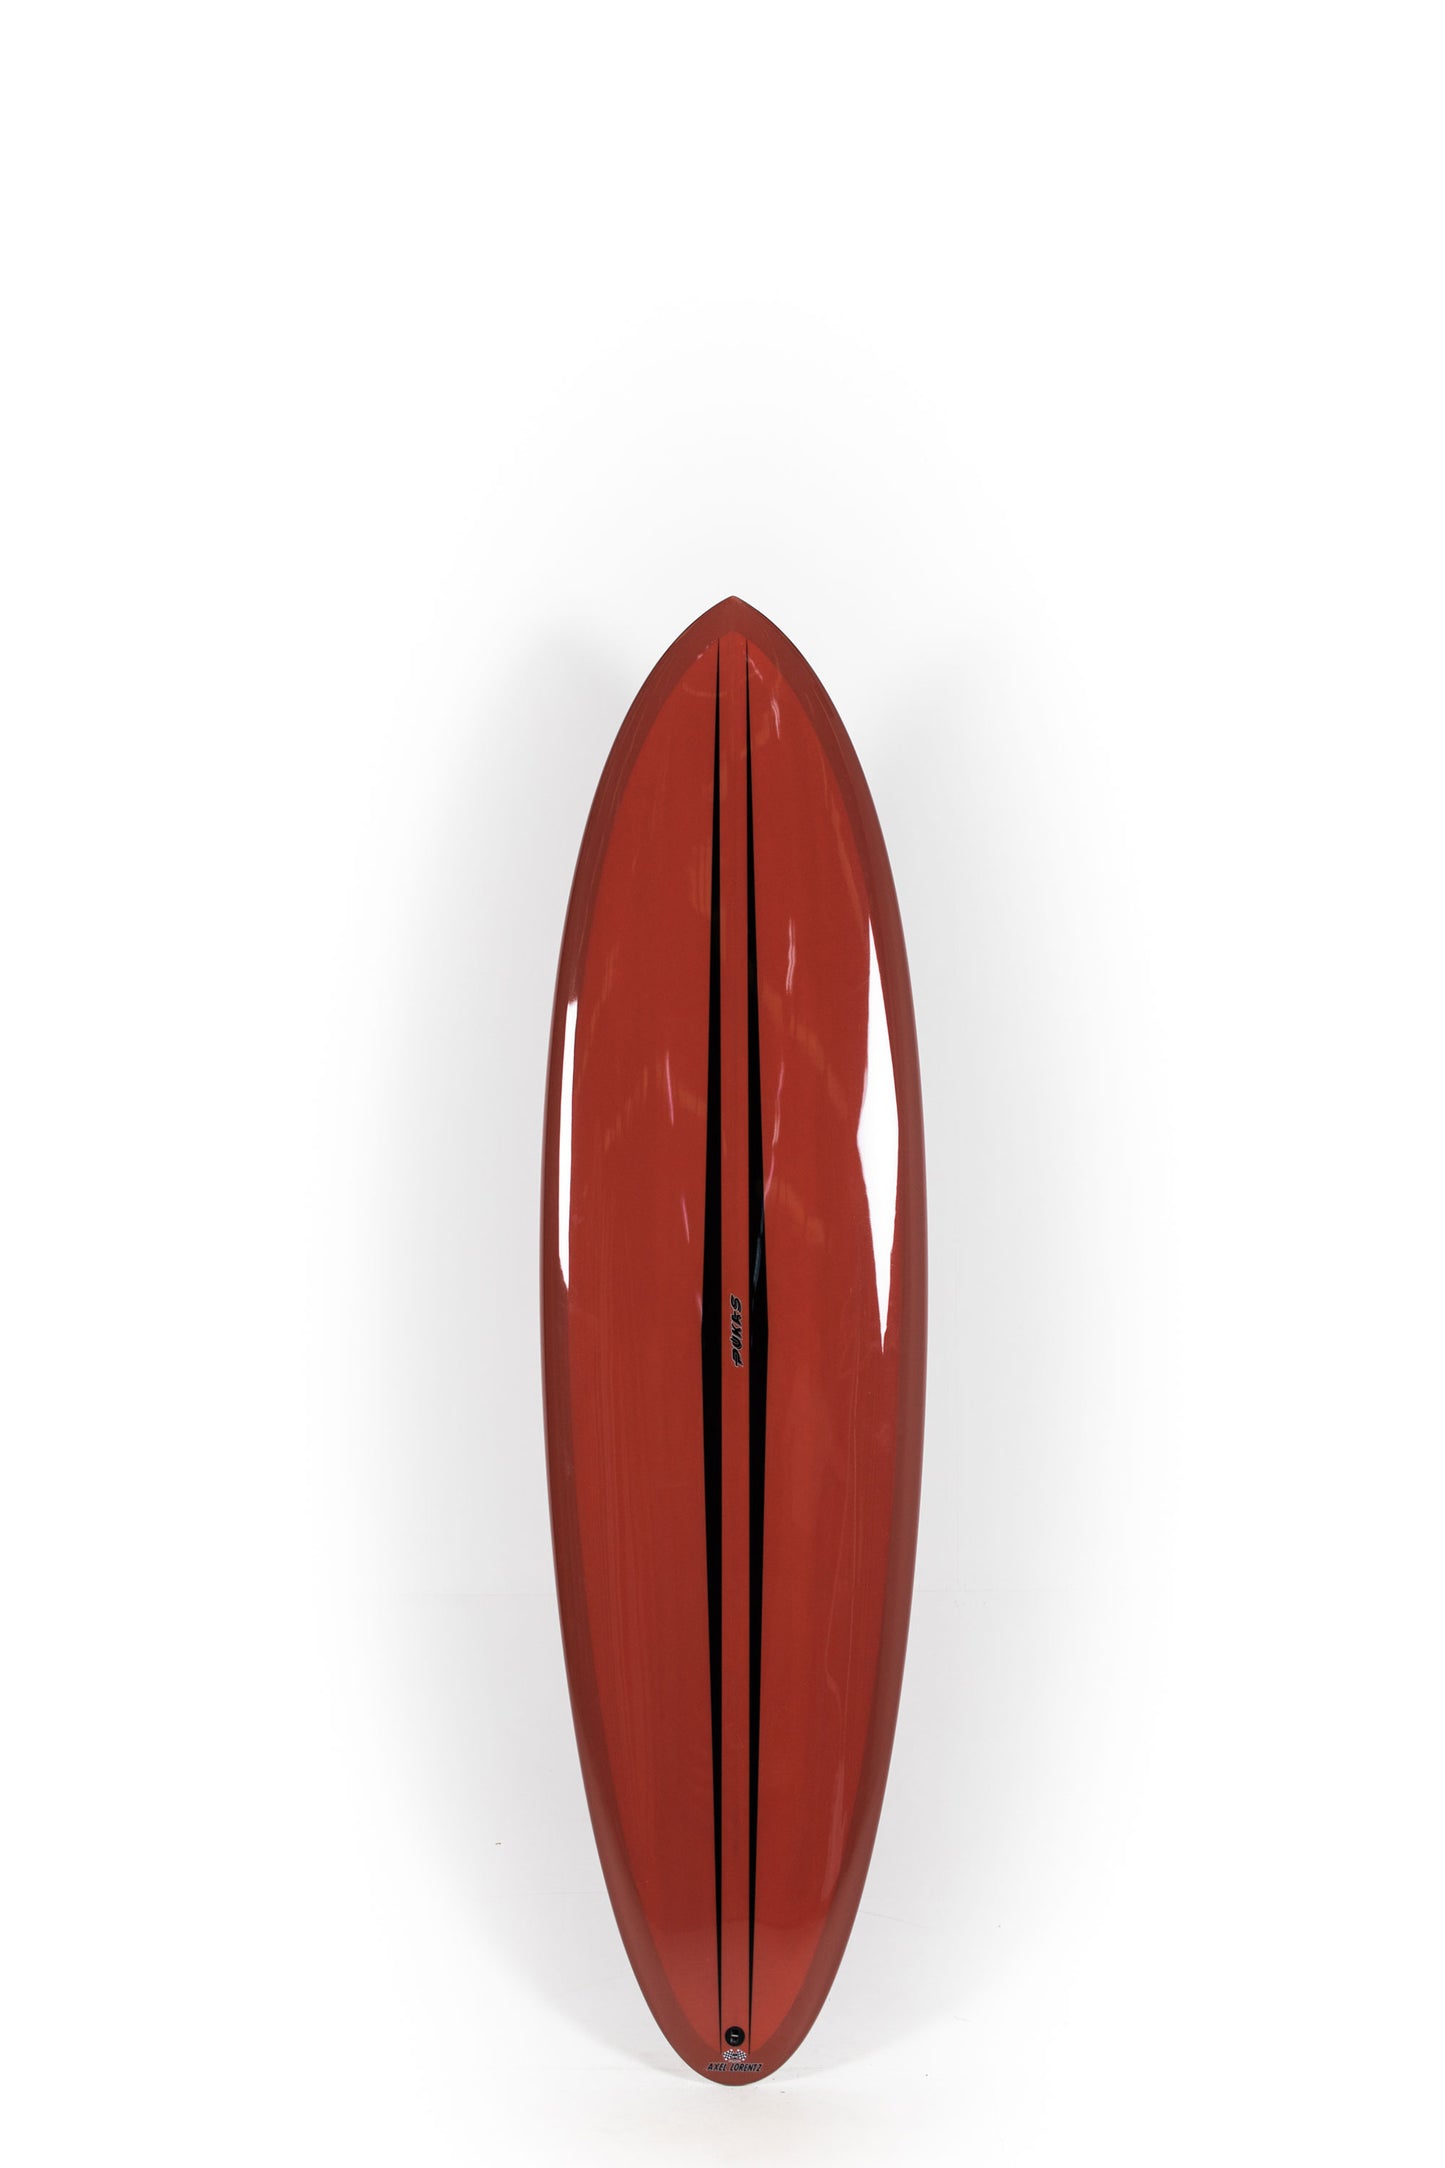 Pukas Surf Shop - Pukas Surfboard - LA CÔTE by Axel Lorentz - 6´8" x 21,25 x 2,88 - 44,4L -  AX09631